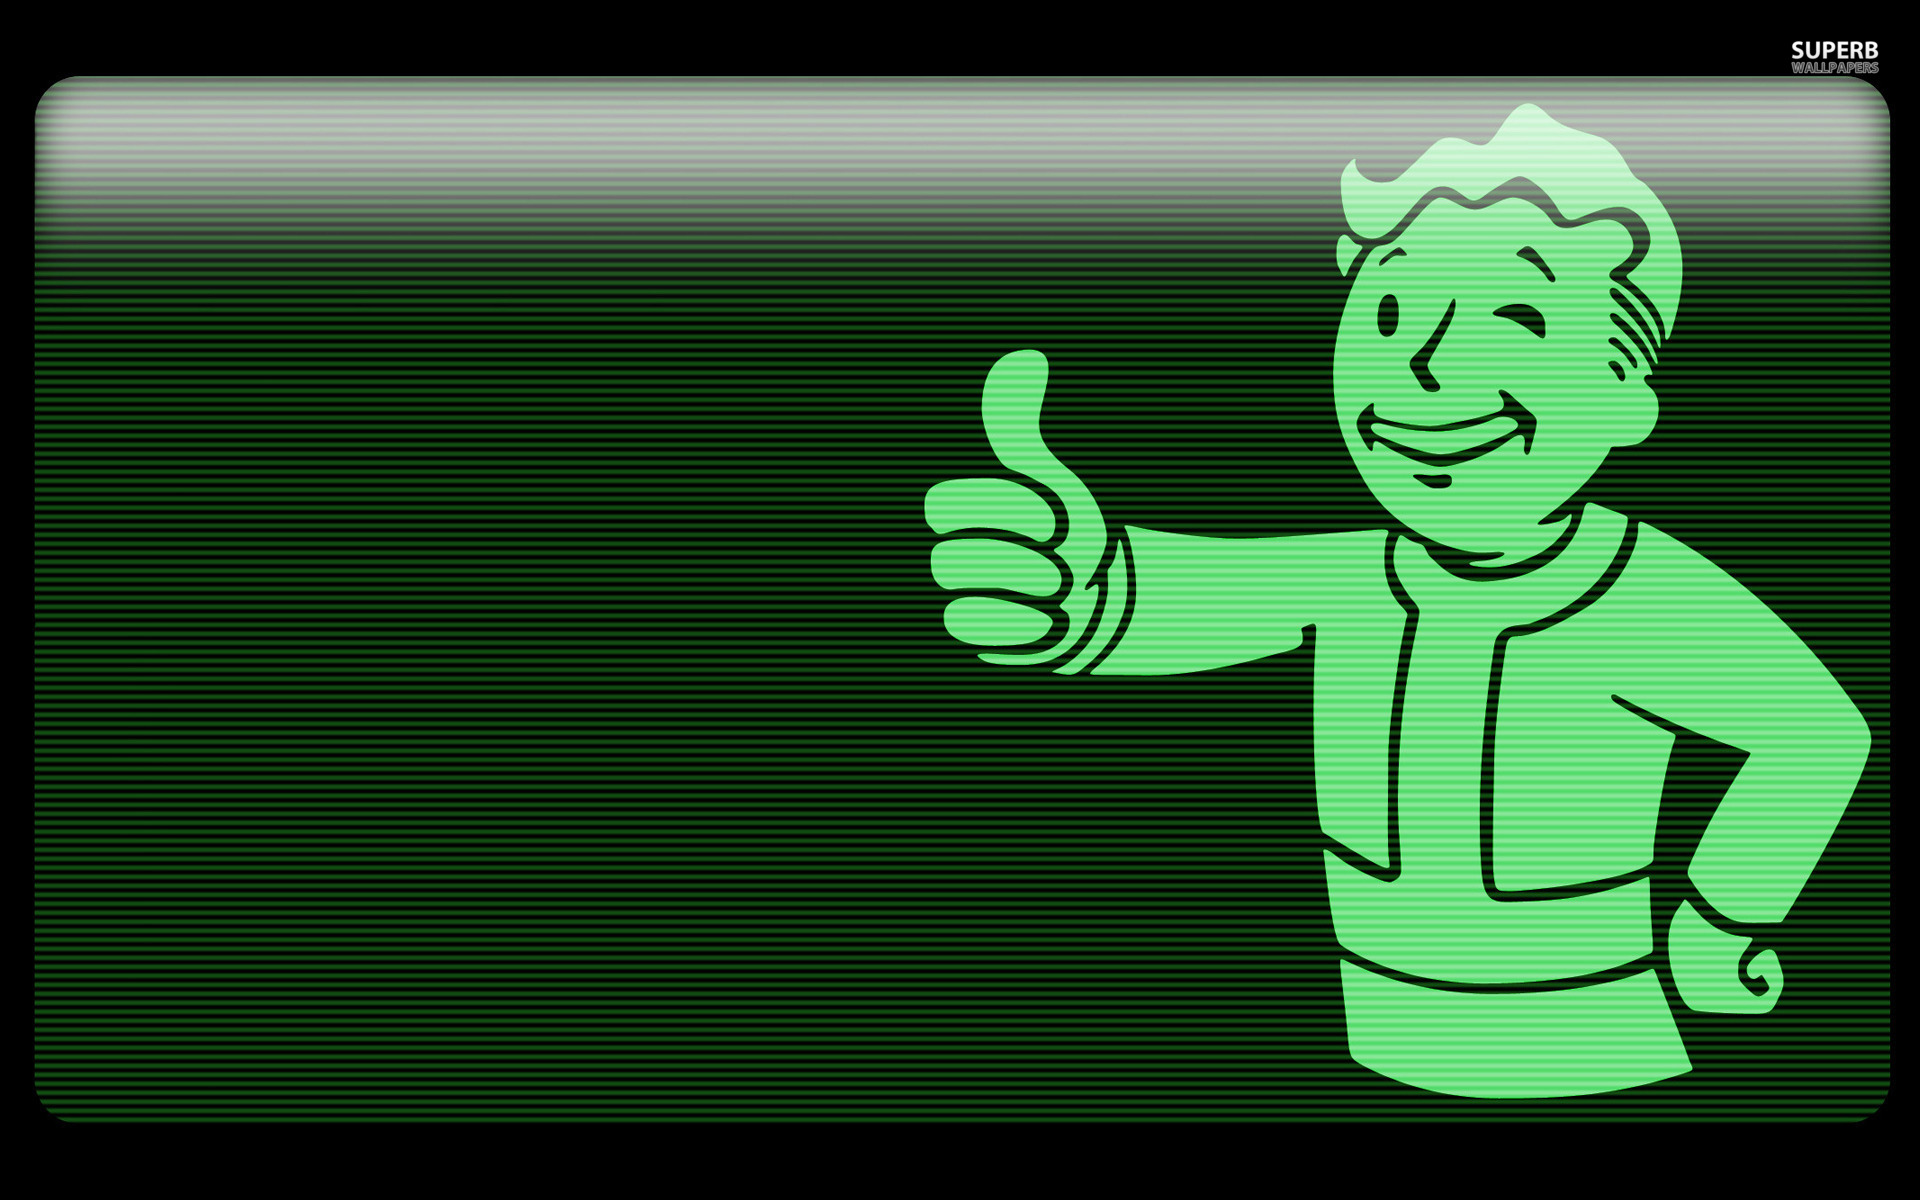 Fallout là một trò chơi kinh dị với môi trường hậu tận thế khắc nghiệt, tuy nhiên lại được khá nhiều game thủ ưa thích. Nếu bạn là một trong những fan của Fallout, đừng bỏ lỡ bức tranh liên quan đến game này mà chúng tôi sẽ giới thiệu đến bạn đấy!